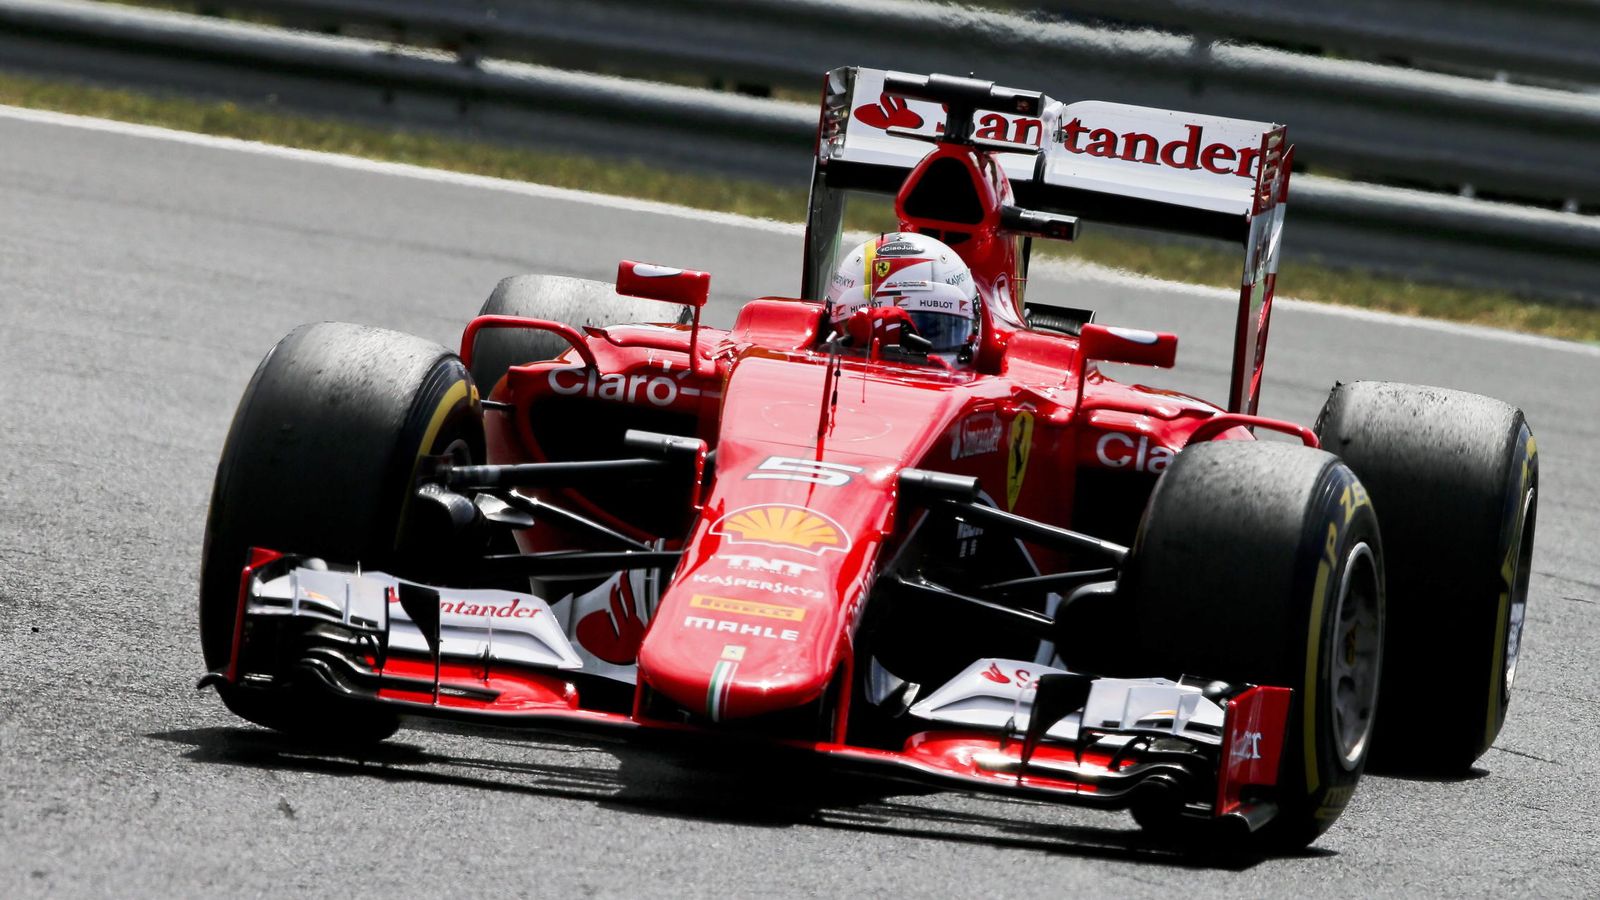 Foto: Ferrari en el Gran premio de Hungría (Reuters)